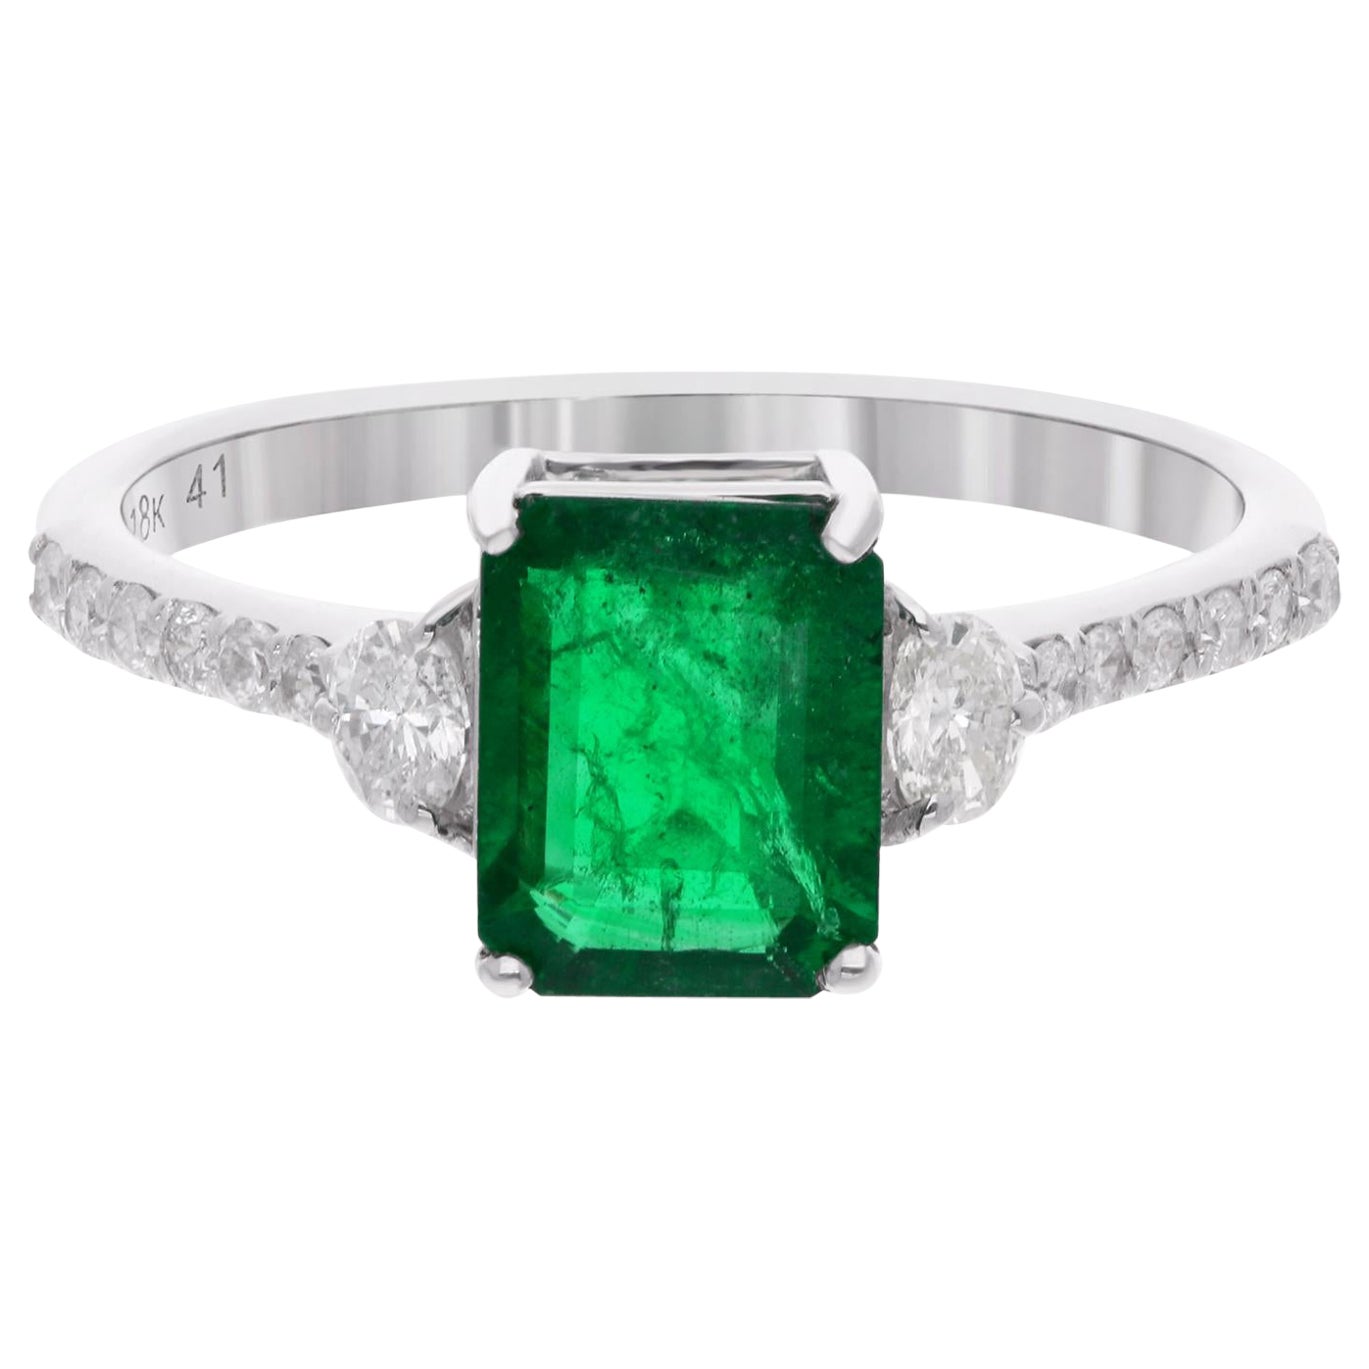 Zambian Emerald Gemstone Ring Round & Oval Shape Diamond 18 Karat White Gold